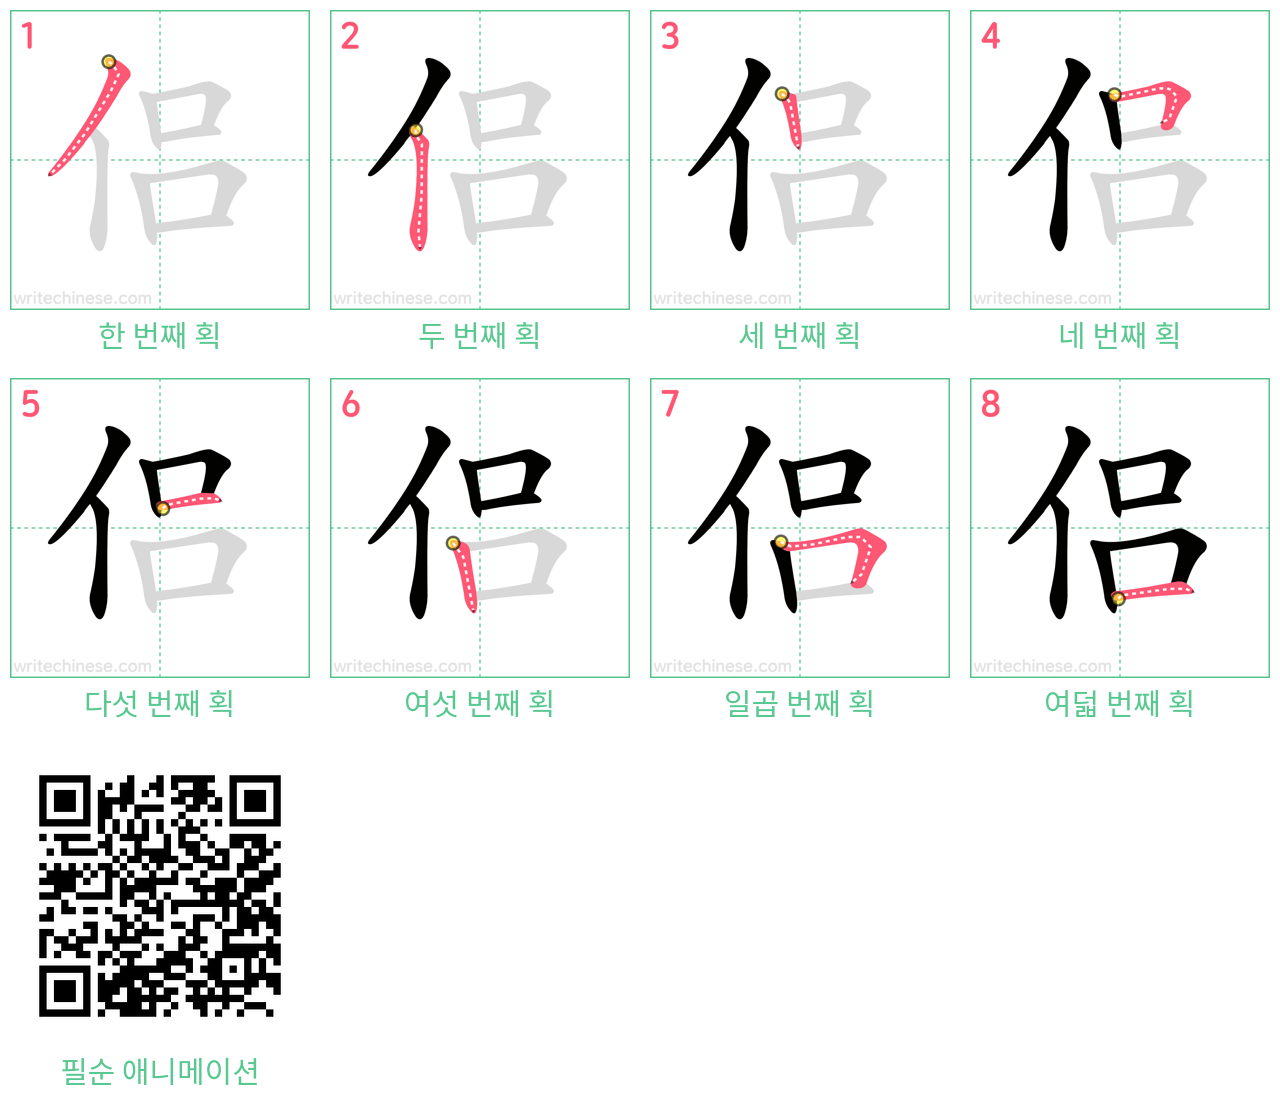 侣 step-by-step stroke order diagrams